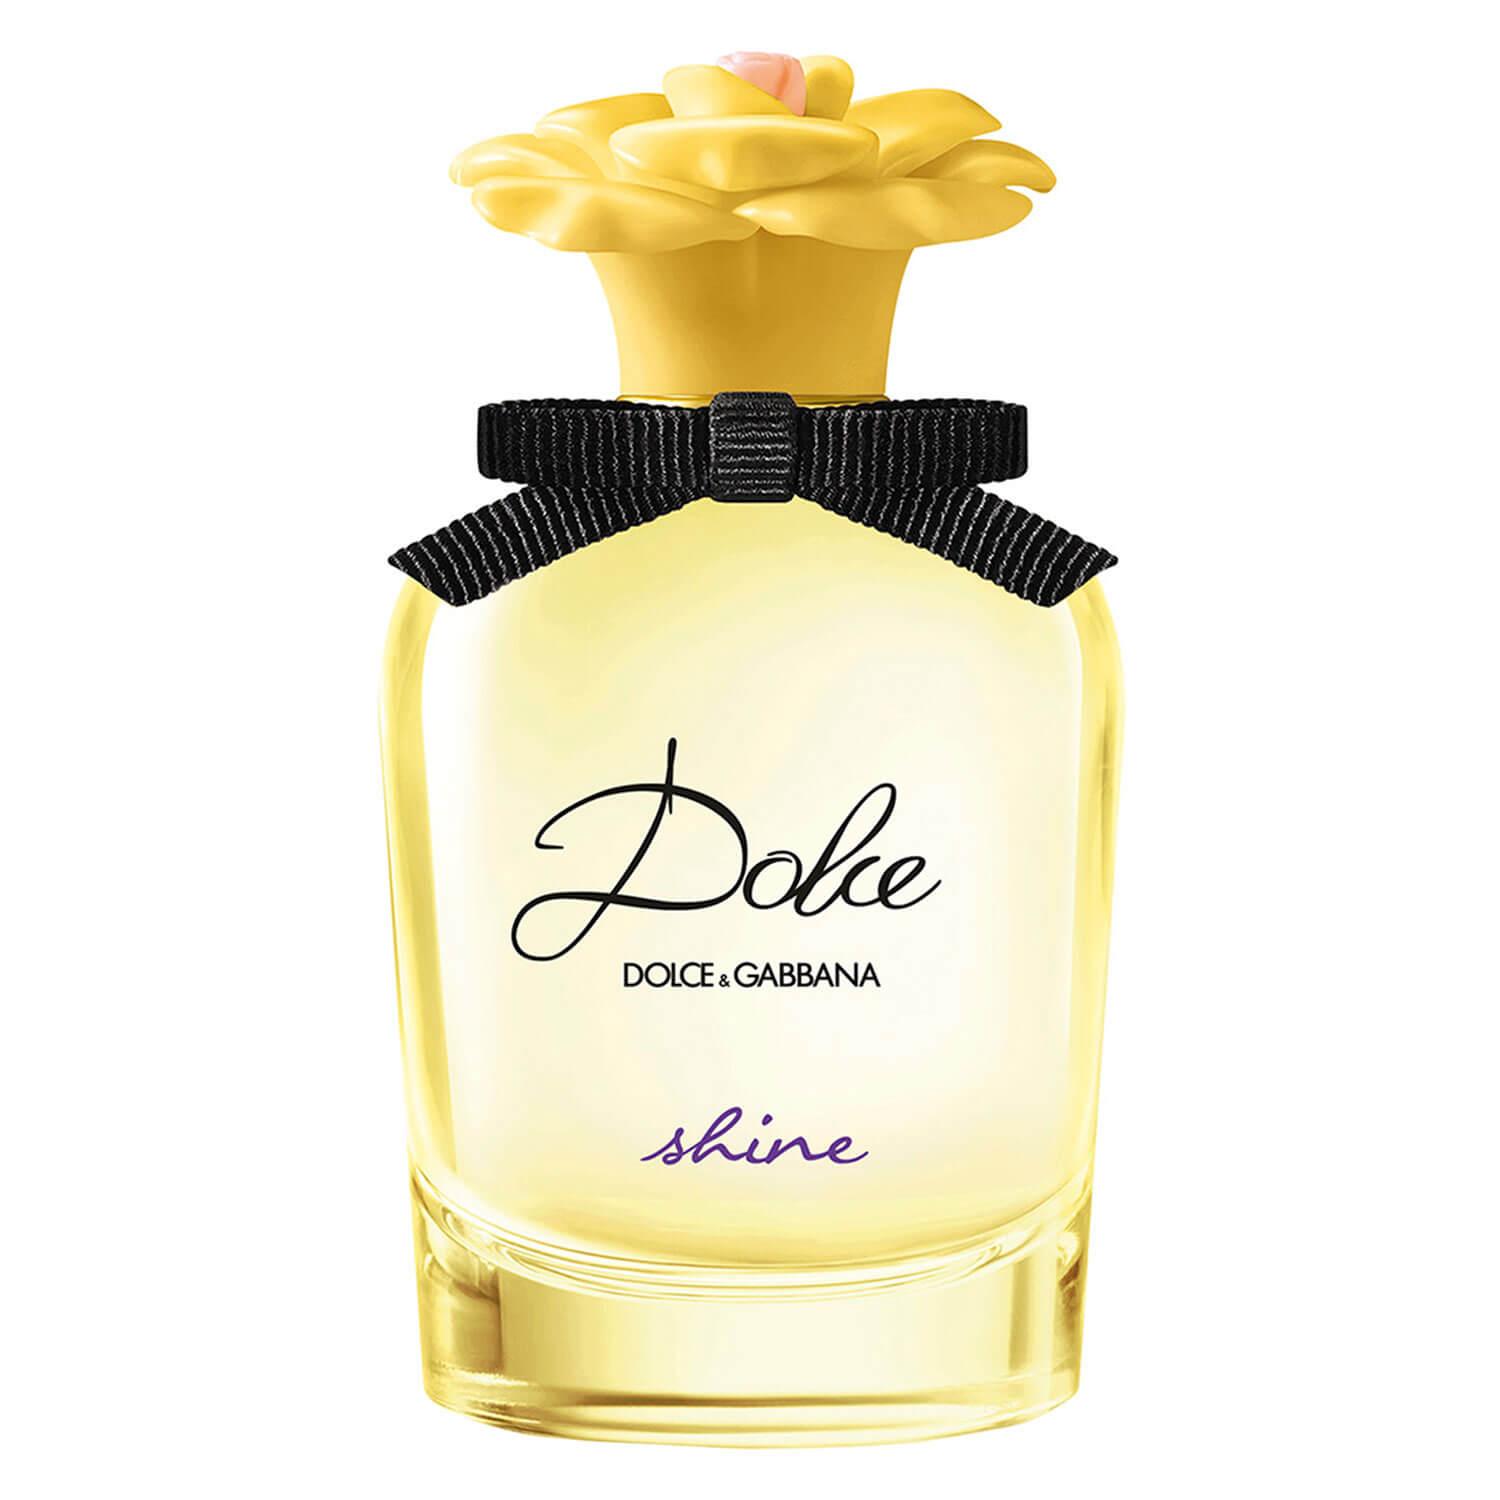 D&G Dolce - Shine Eau de Parfum